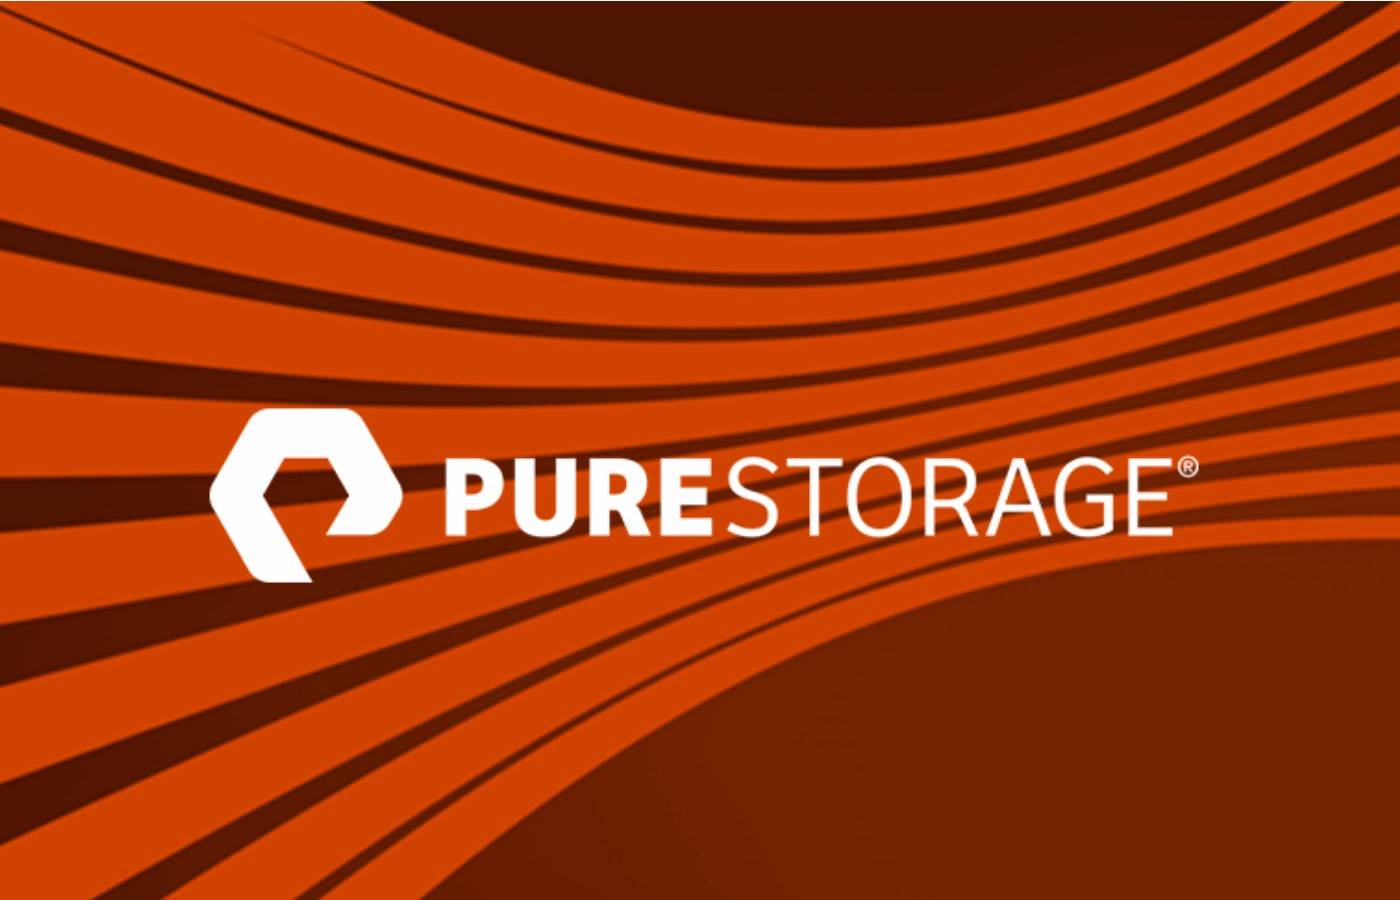 Lưu trữ Pure Storage Vietnam - Vina Aspire